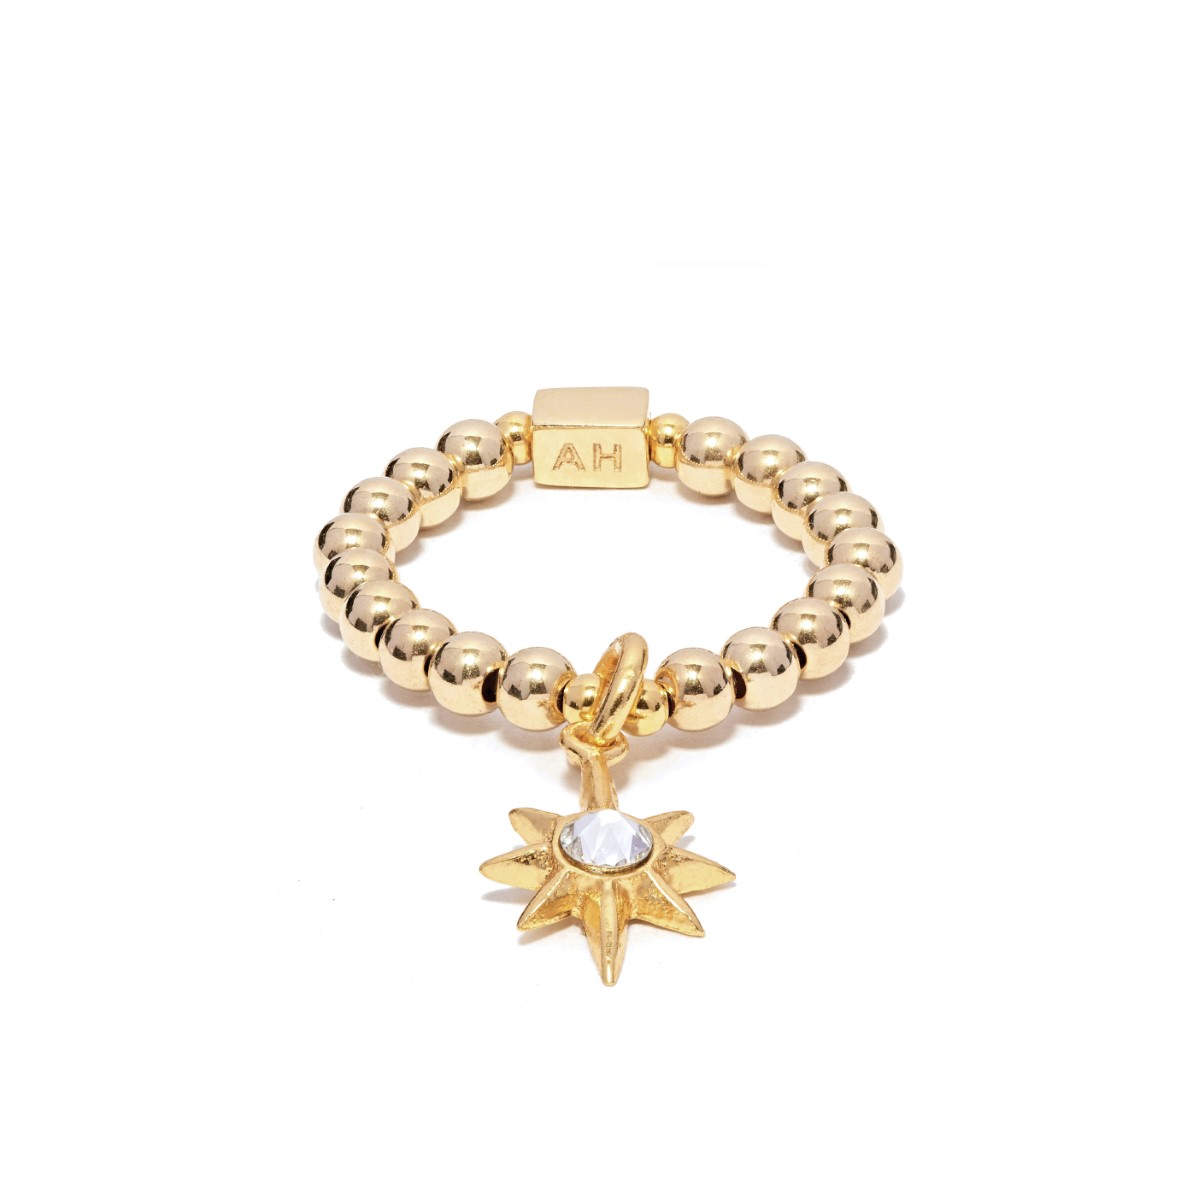 Annie Haak Mini Charm Gold Ring - Astra Star